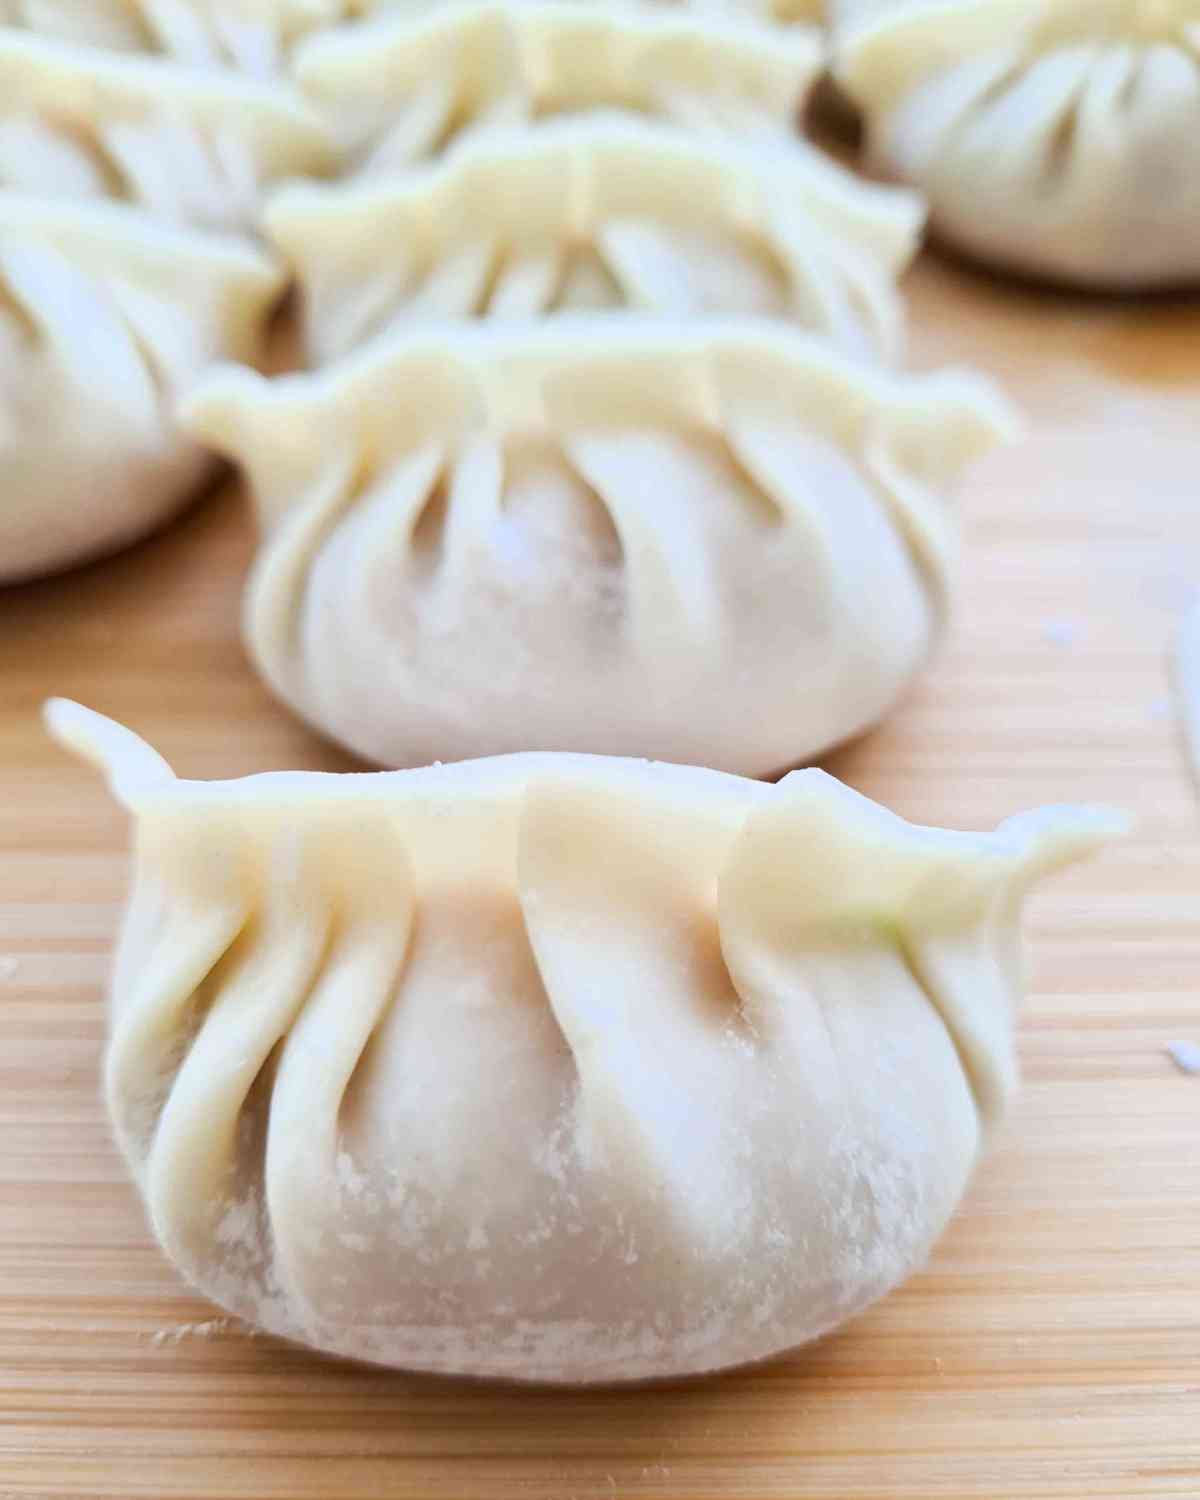 Close up of neatly folded, raw dumplings